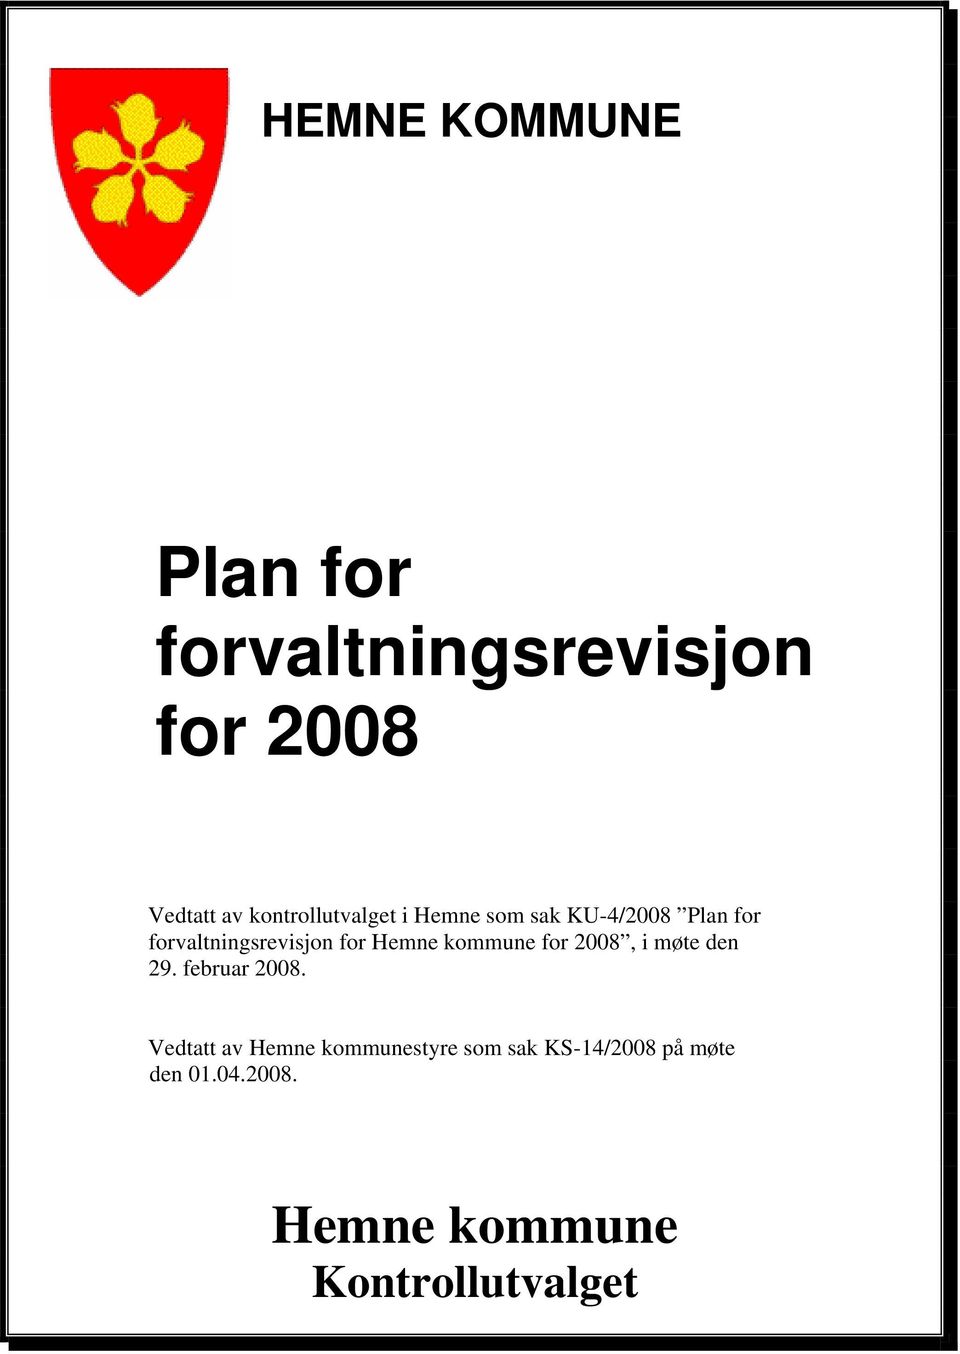 for Hemne kommune for 2008, i møte den 29. februar 2008.